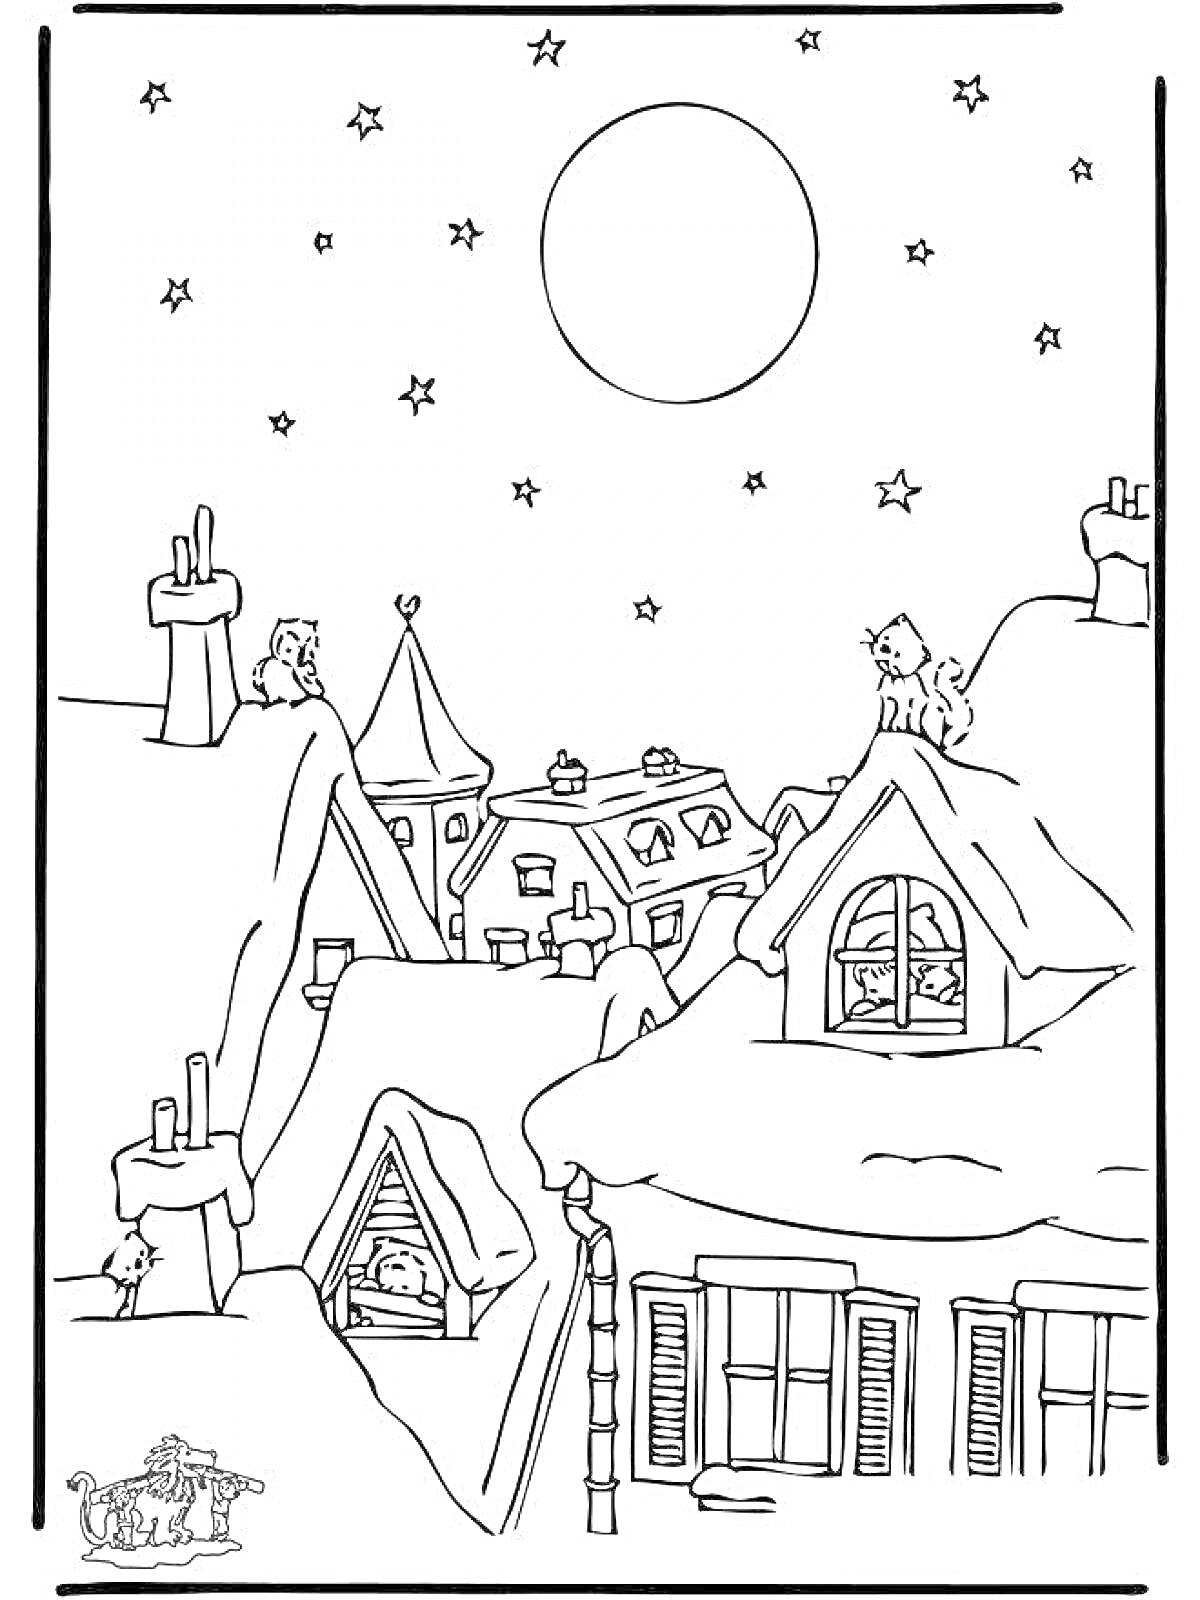 Раскраска город ночью перед Рождеством со звездами и луной на небе, дымоходами и снегом на крышах, окнами с иллюминацией, домами с черепичными крышами и рождественским декором